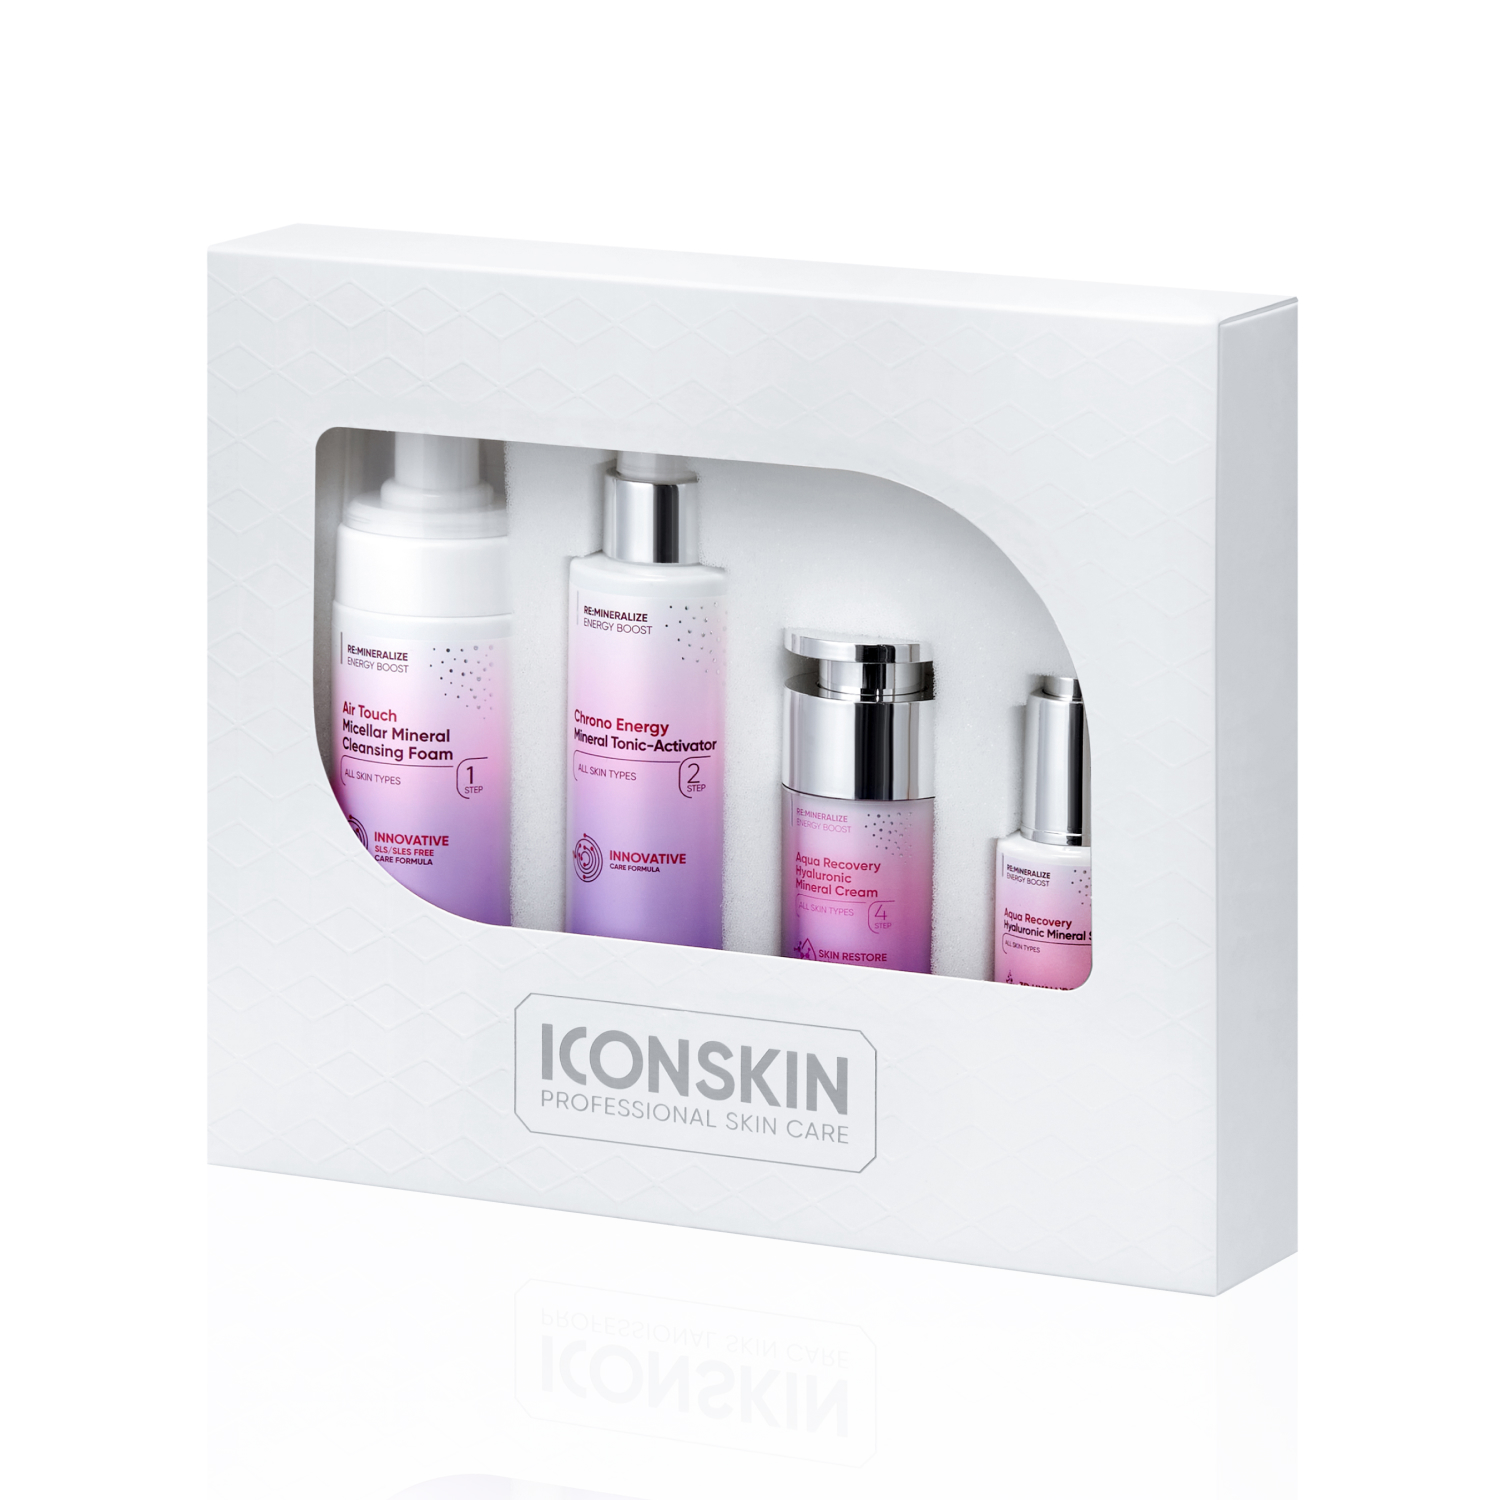 Набор средств ICON SKIN для ухода за всеми типами кожи № 1, 4 средства.